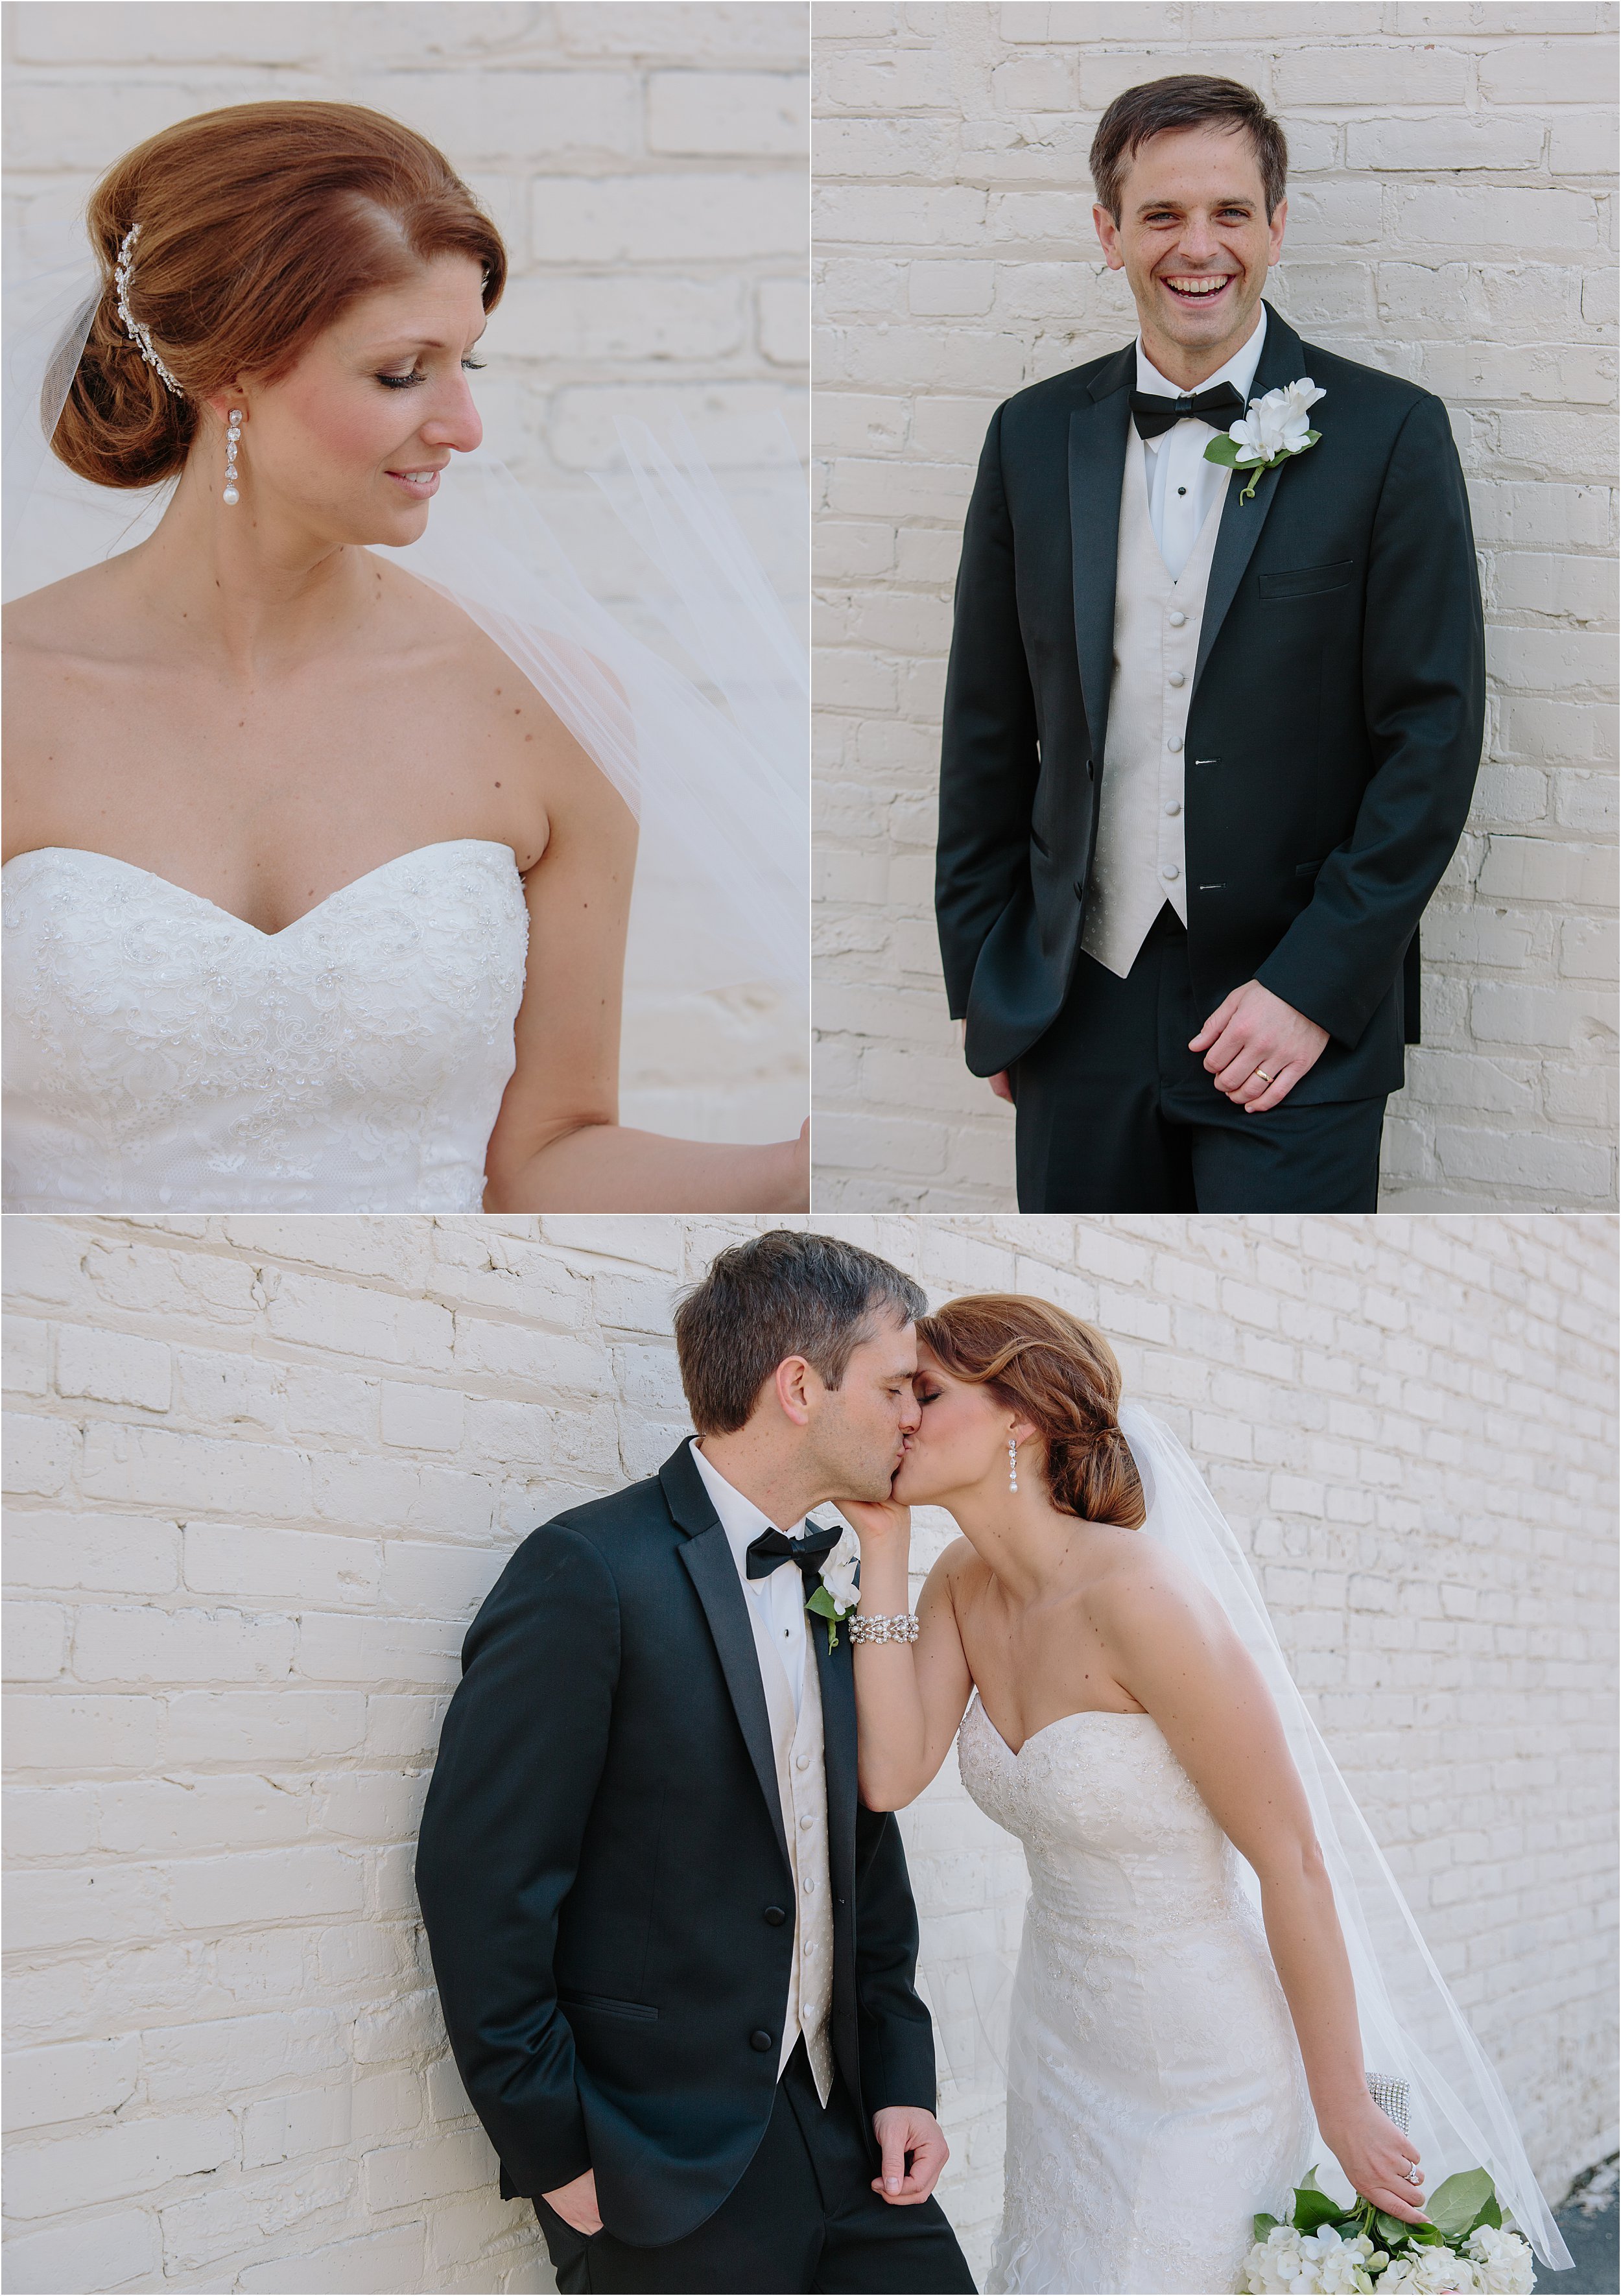 21-kissing-bride-groom-brick-wall.JPG